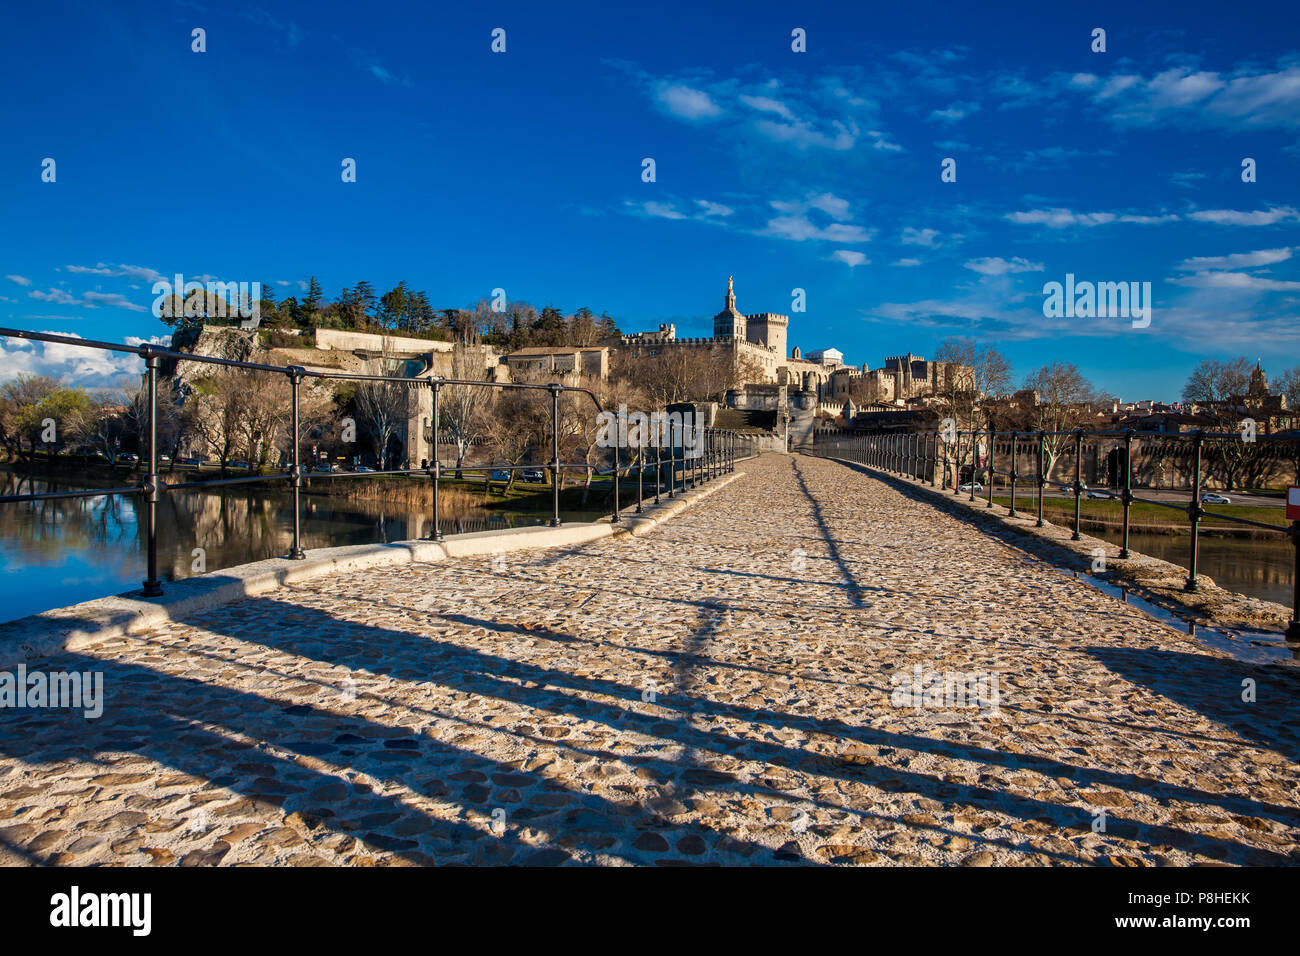 AVIGNON, Frankreich - MÄRZ 2018: die berühmte Brücke von Avignon auch genannt Pont Saint-Benezet bei Avignon Frankreich Stockfoto